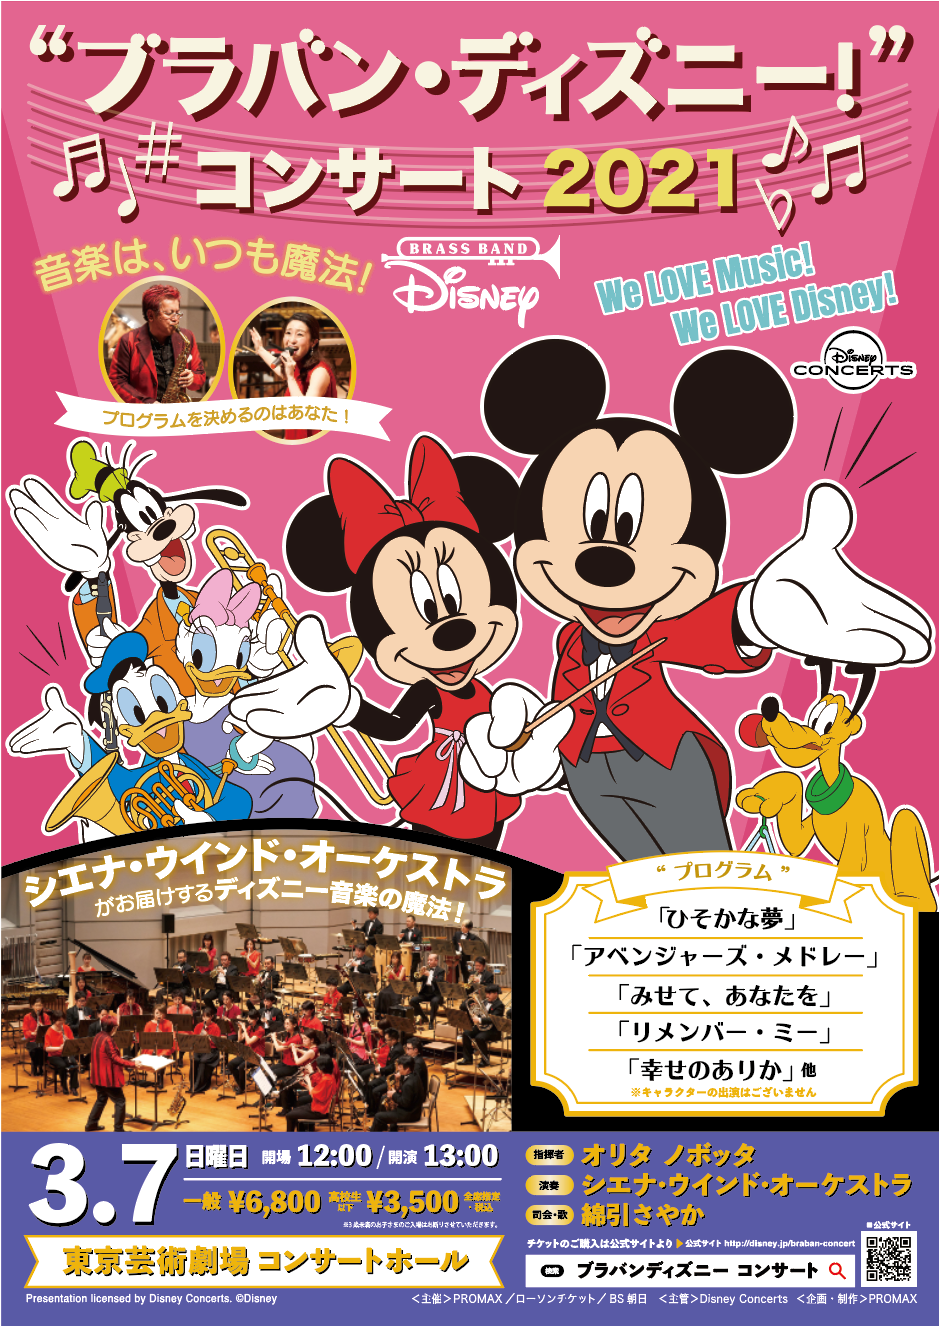 ブラバン ディズニー コンサート 21 東京公演 Siena Wind Orchestra